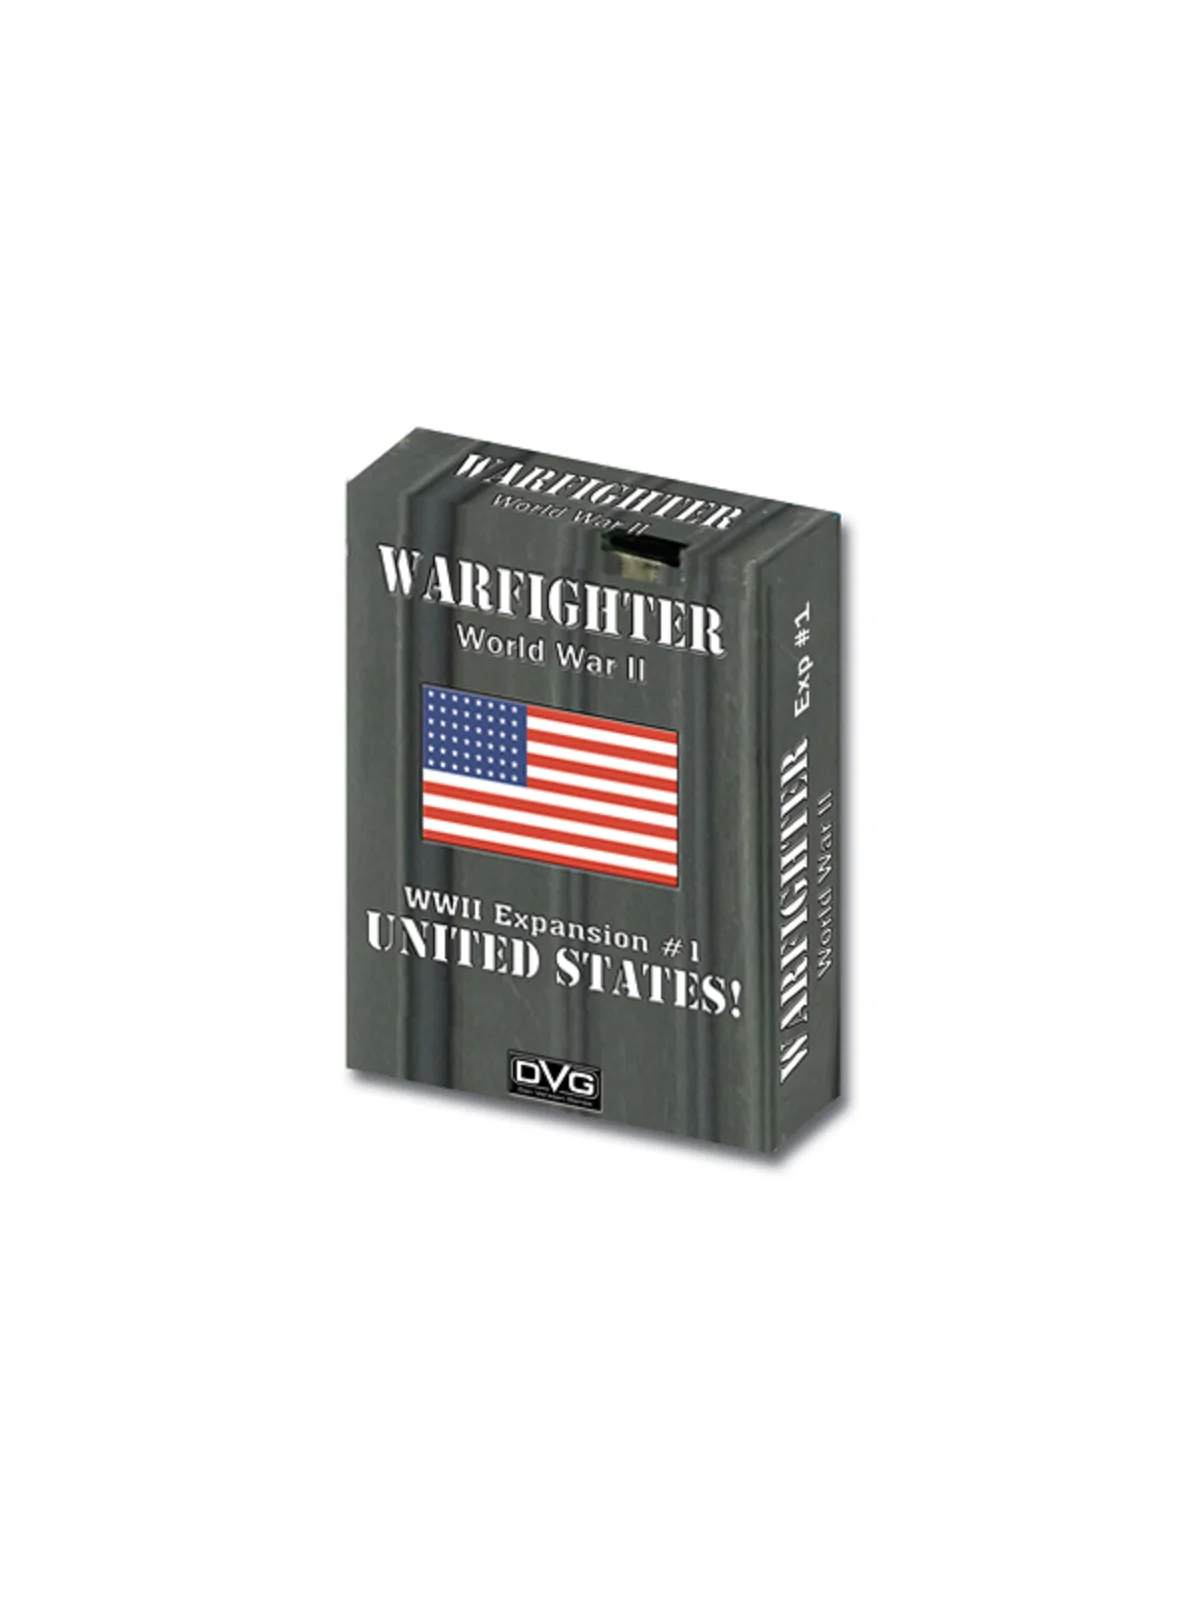 Comprar Warfighter: Expansión US 1 barato al mejor precio 18,00 € de D